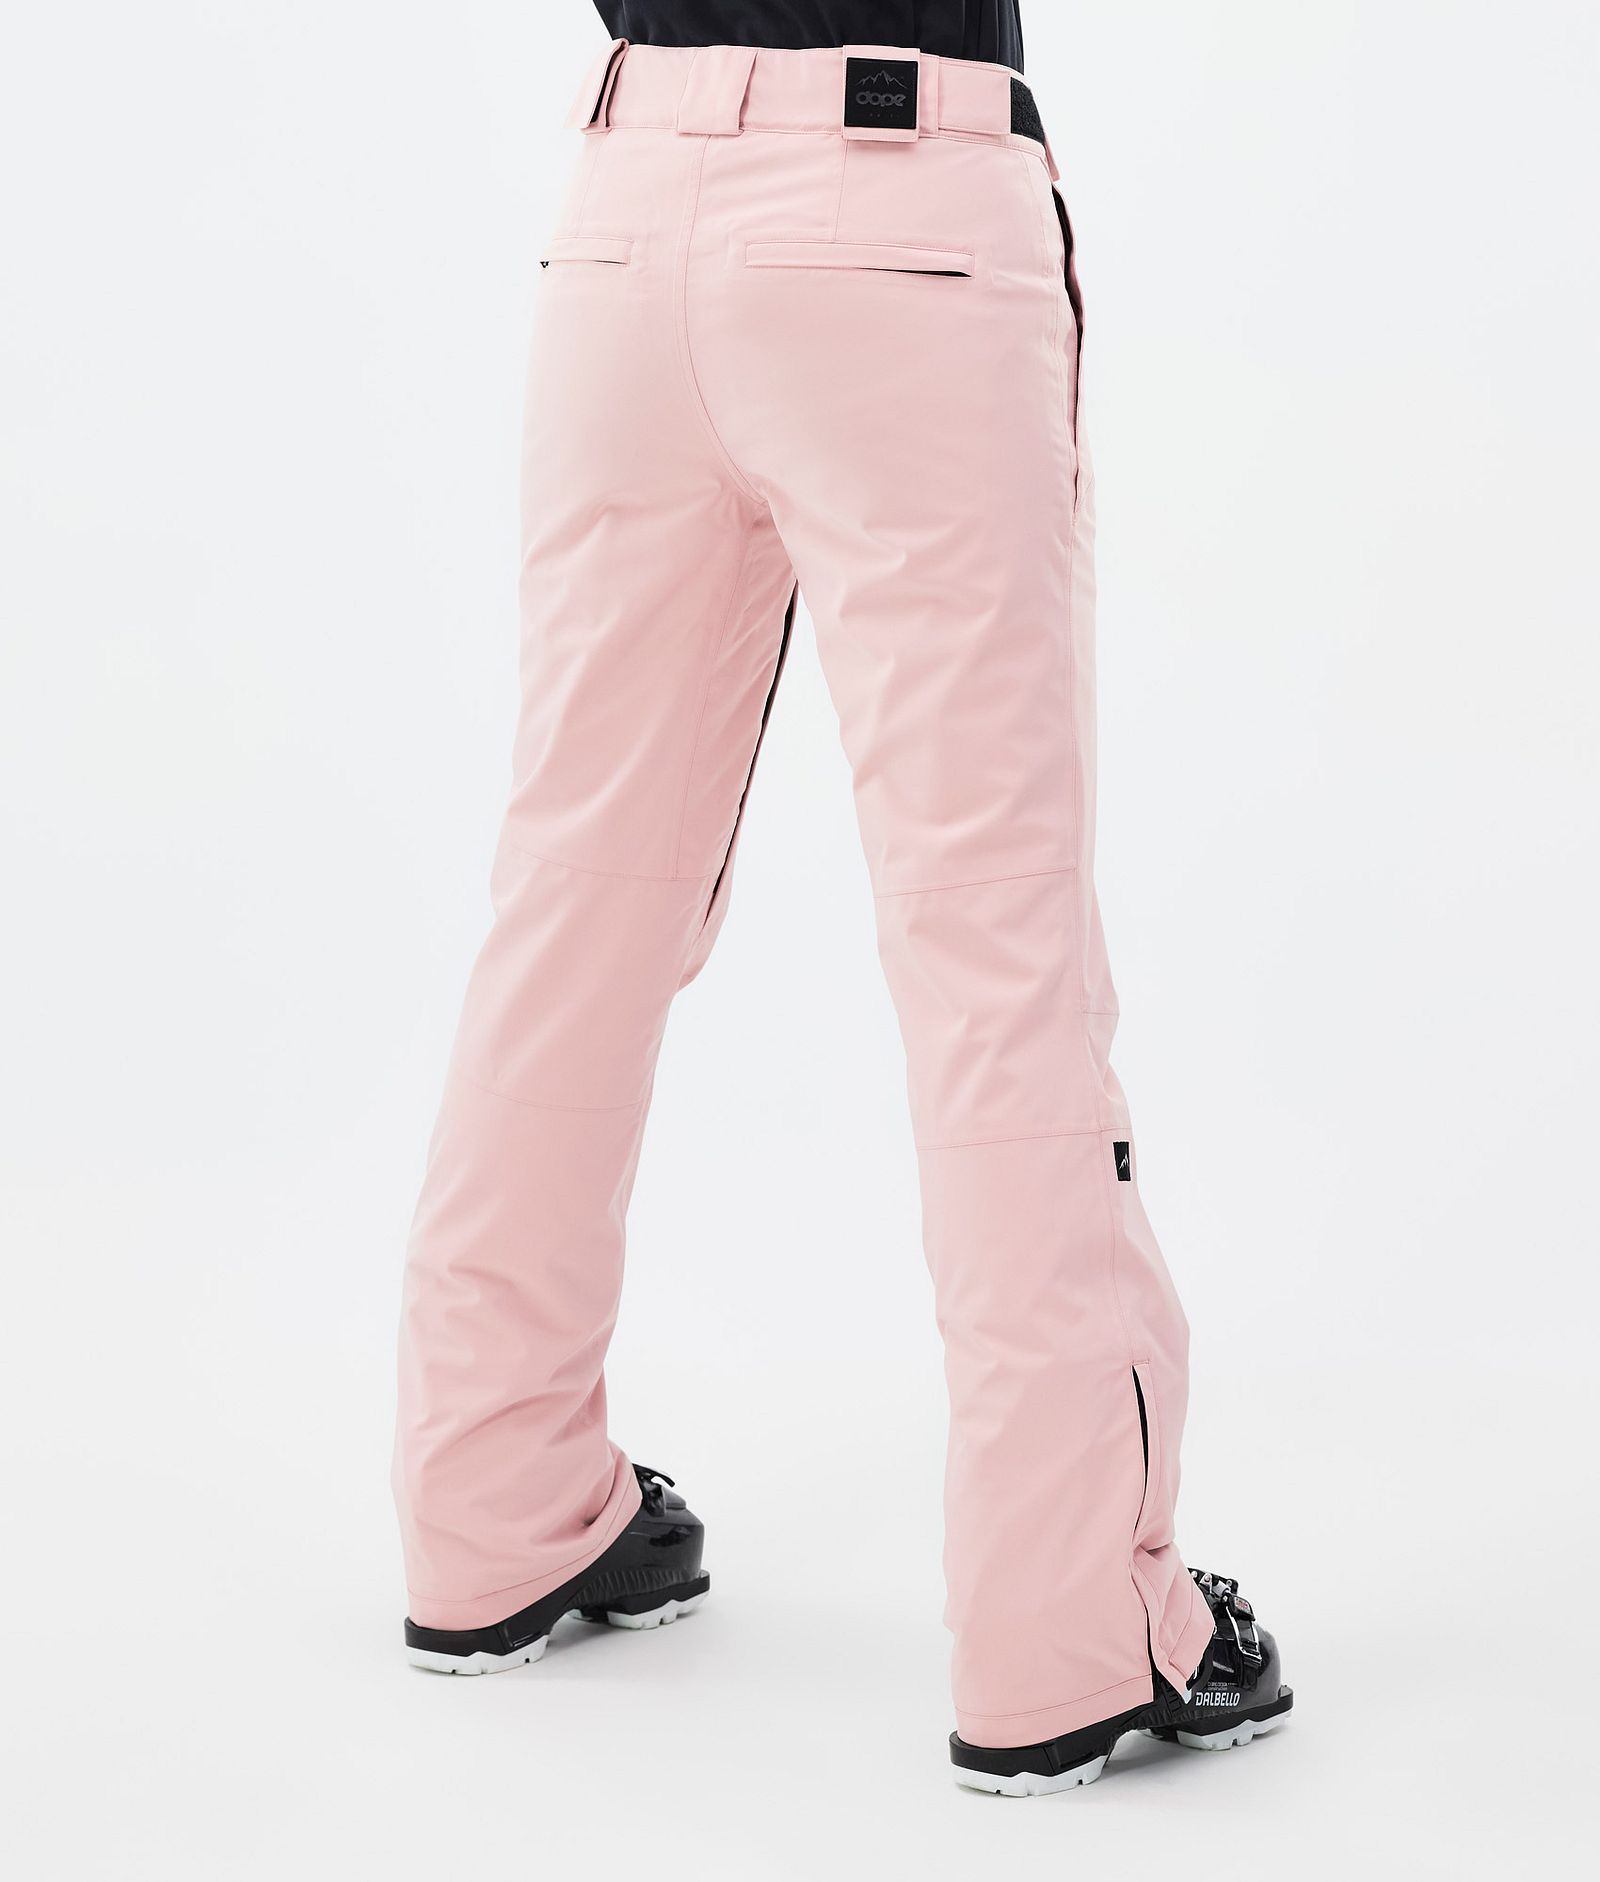 Dope Con W Pantalones Esquí Mujer Soft Pink, Imagen 4 de 6